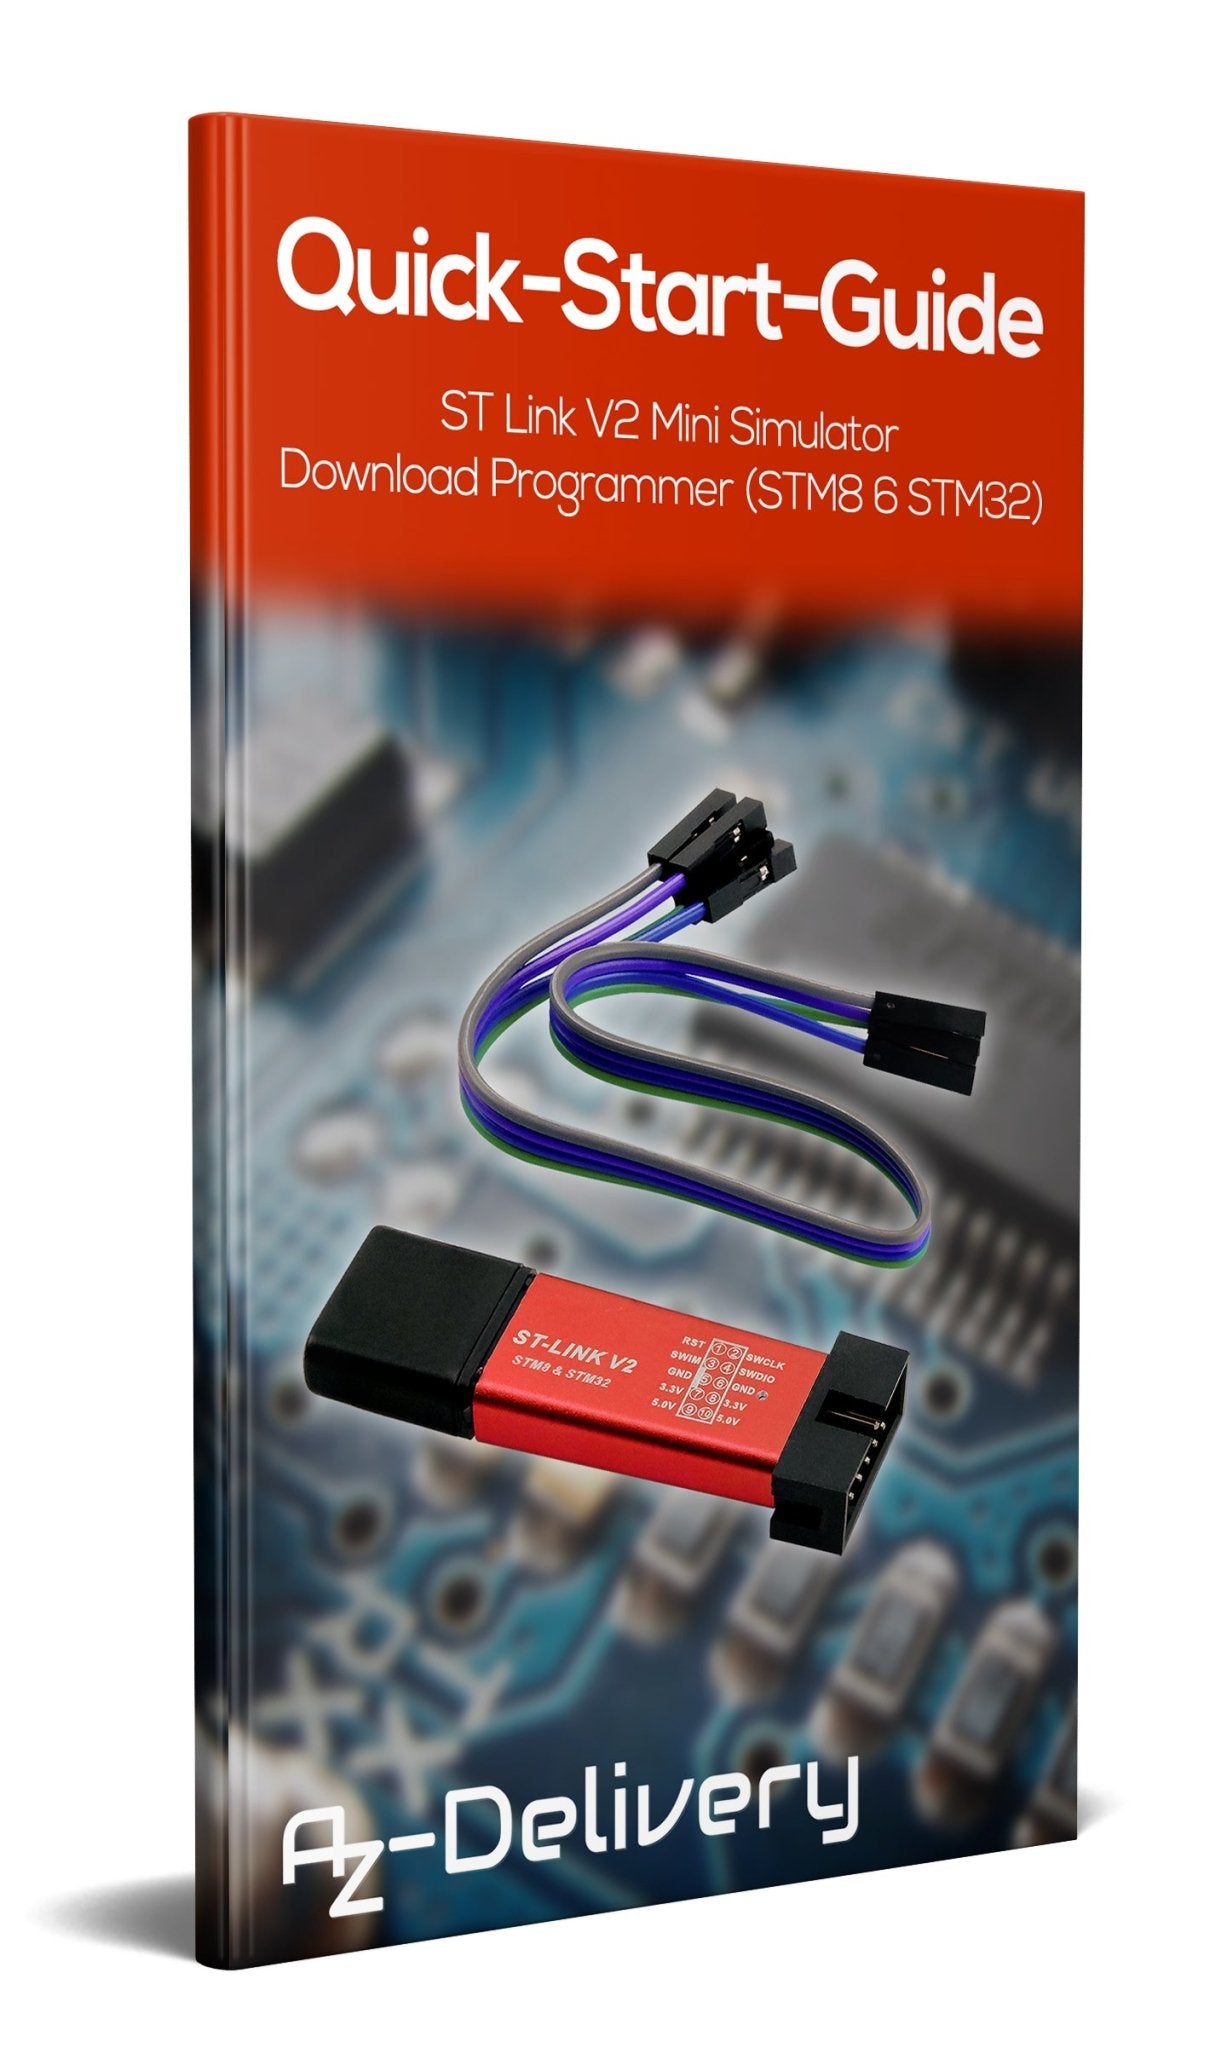 ST Link V2 Mini Simulator Download Programmer (STM8 6 STM32) - AZ-Delivery